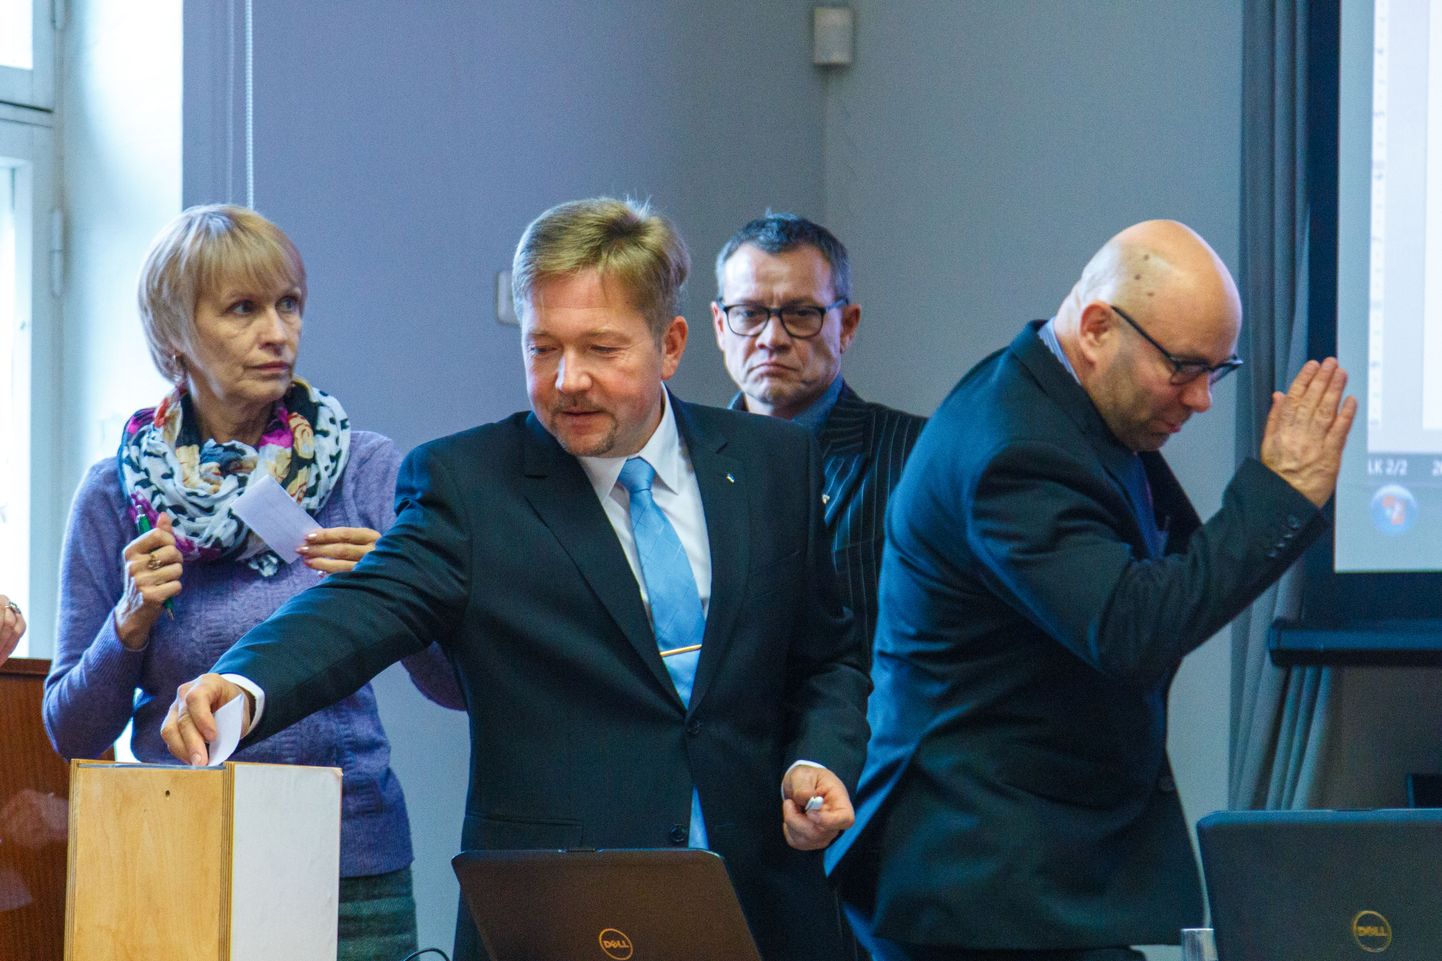 Pilt Otepää vallavolikogus on tehtud 2017. aasta oktoobris, kui toimus volikogu esimene istung pärast valimisi ning valiti volikogu esimeest ja aseesimeest. Pildil (vasakult) Irja Sõnum, Jaanus Barkala, Jaanus Raidal ja Kaido Tamberg.